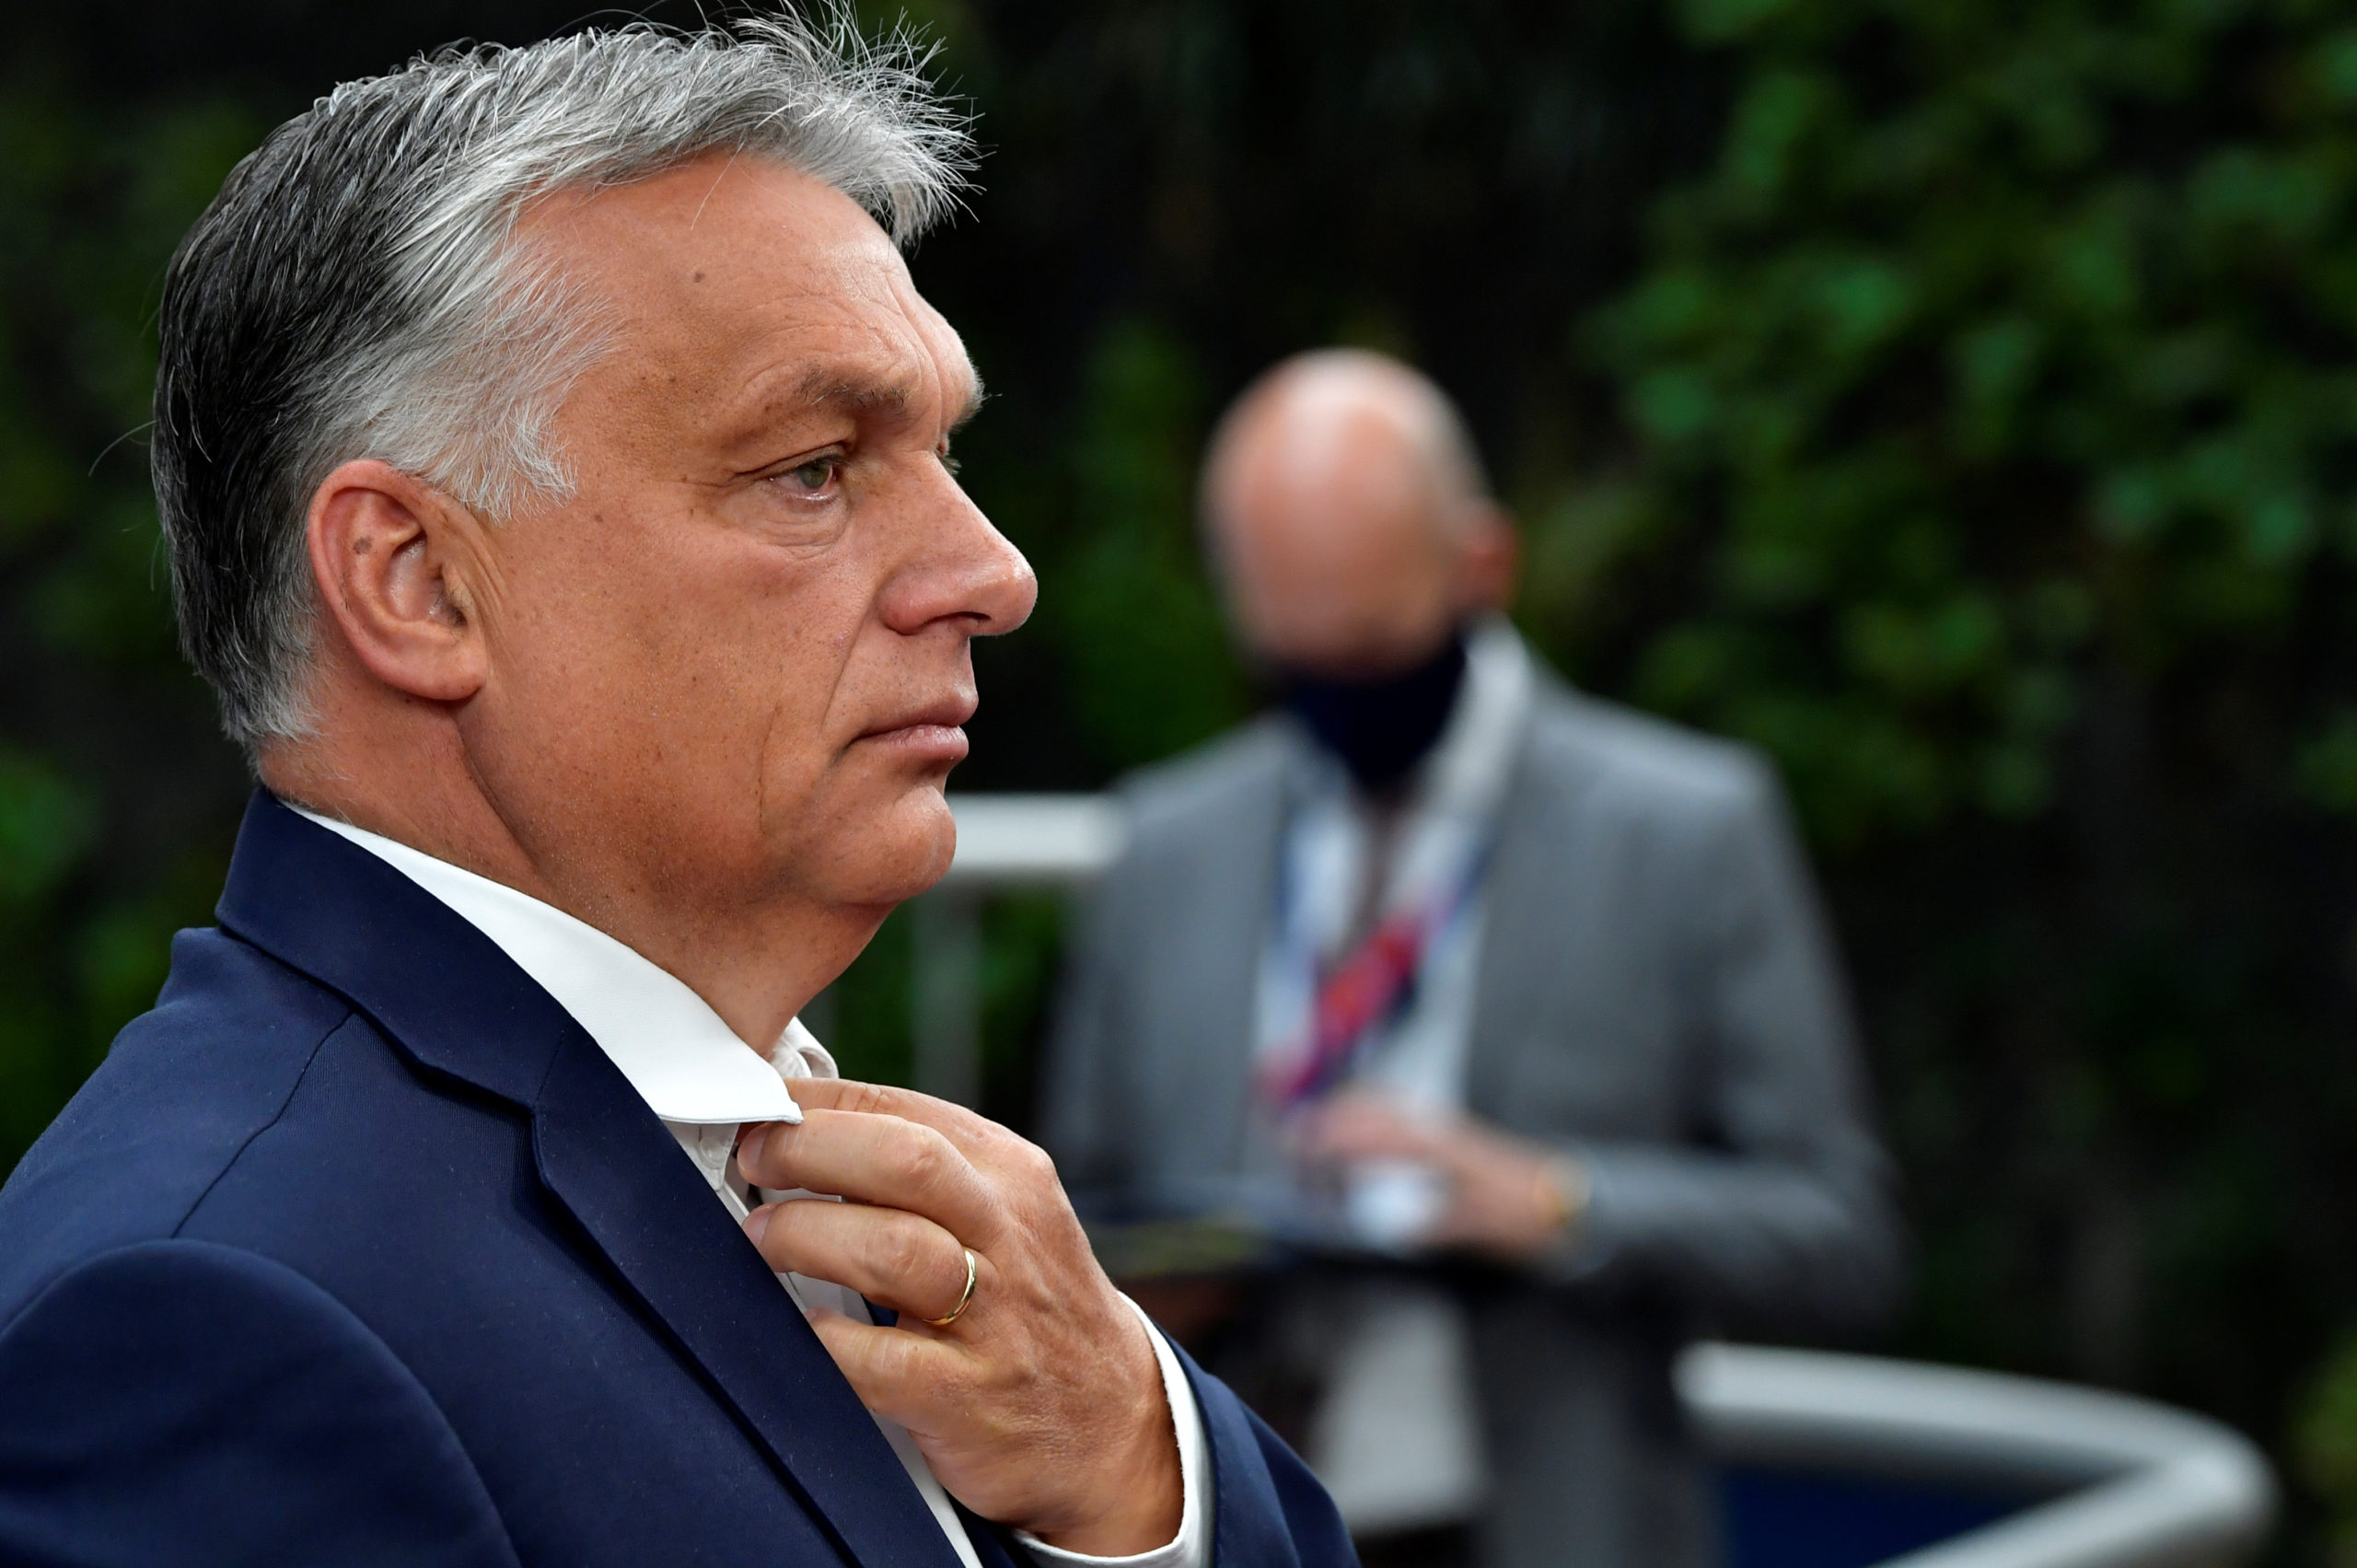 Le budget de l'UE aurait contraint la Hongrie à accepter l'immigration, dit Orban